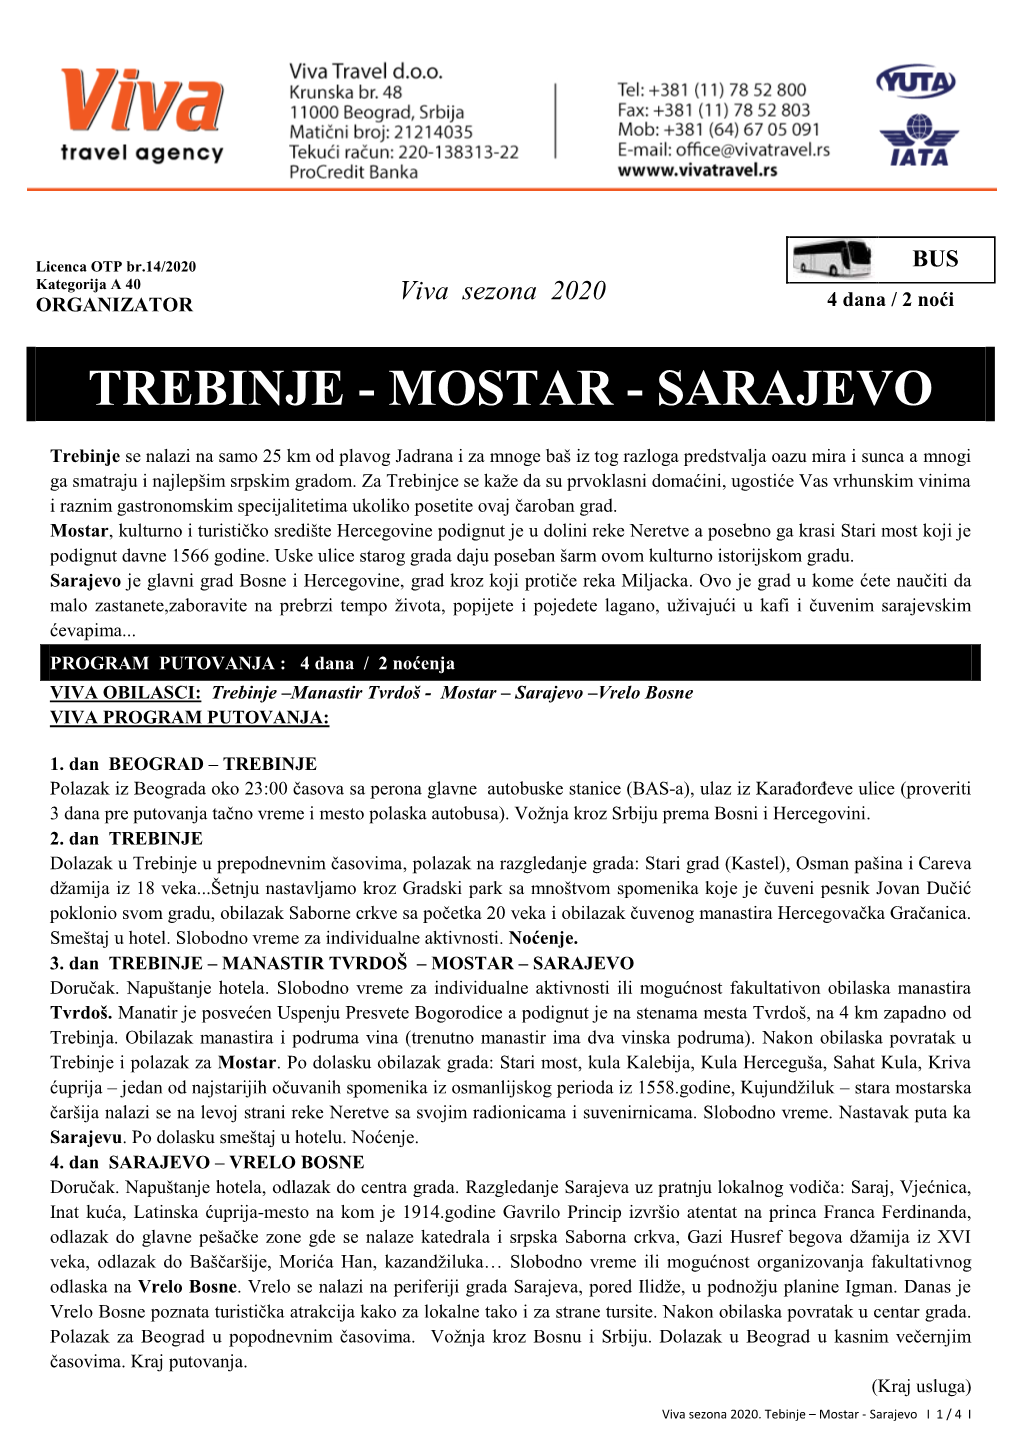 Trebinje - Mostar - Sarajevo